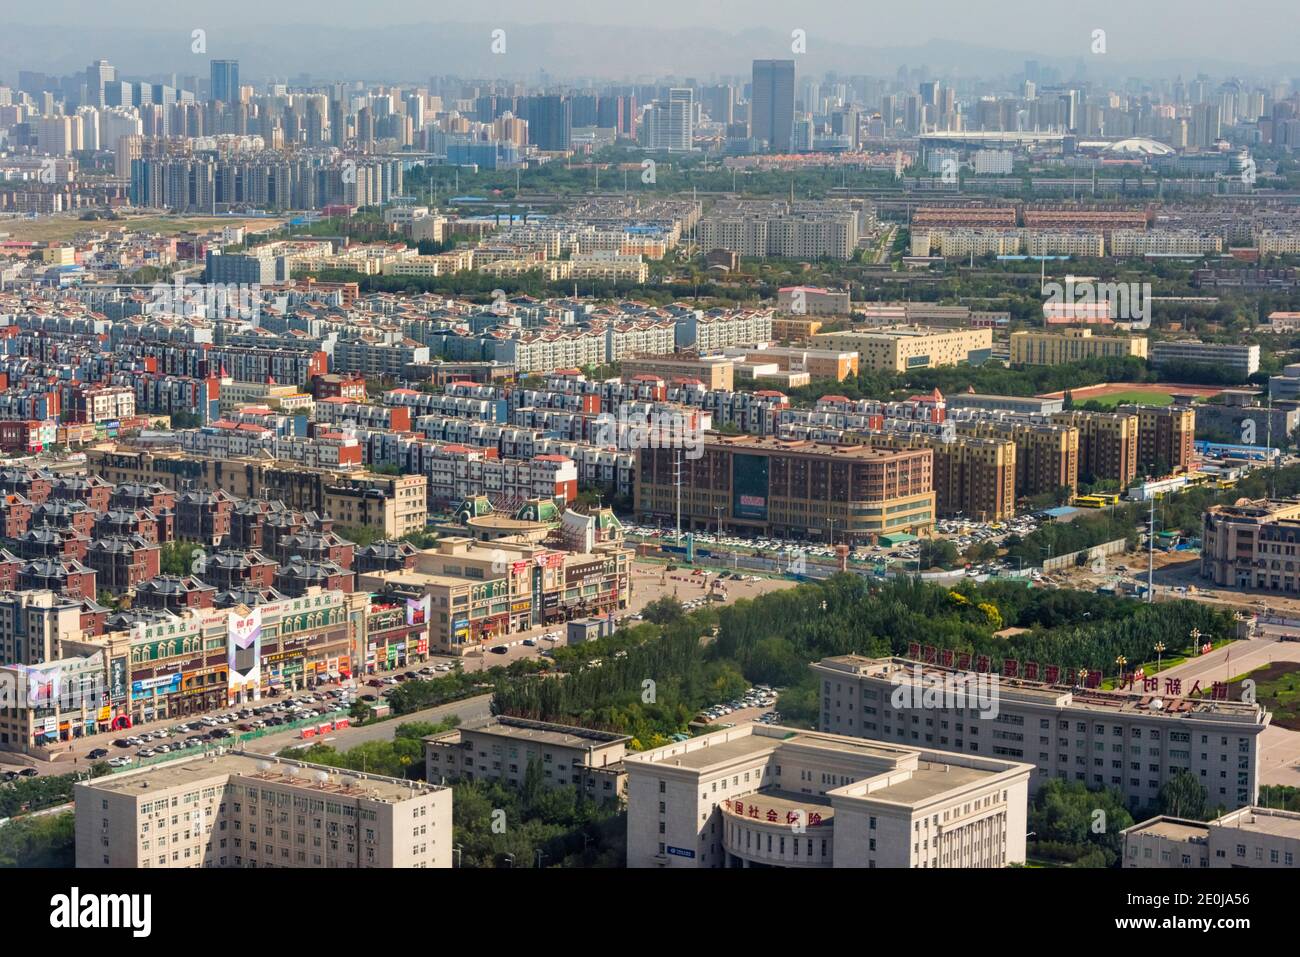 Aerial view of new development, Urumqi, Xinjiang Province, China Stock Photo